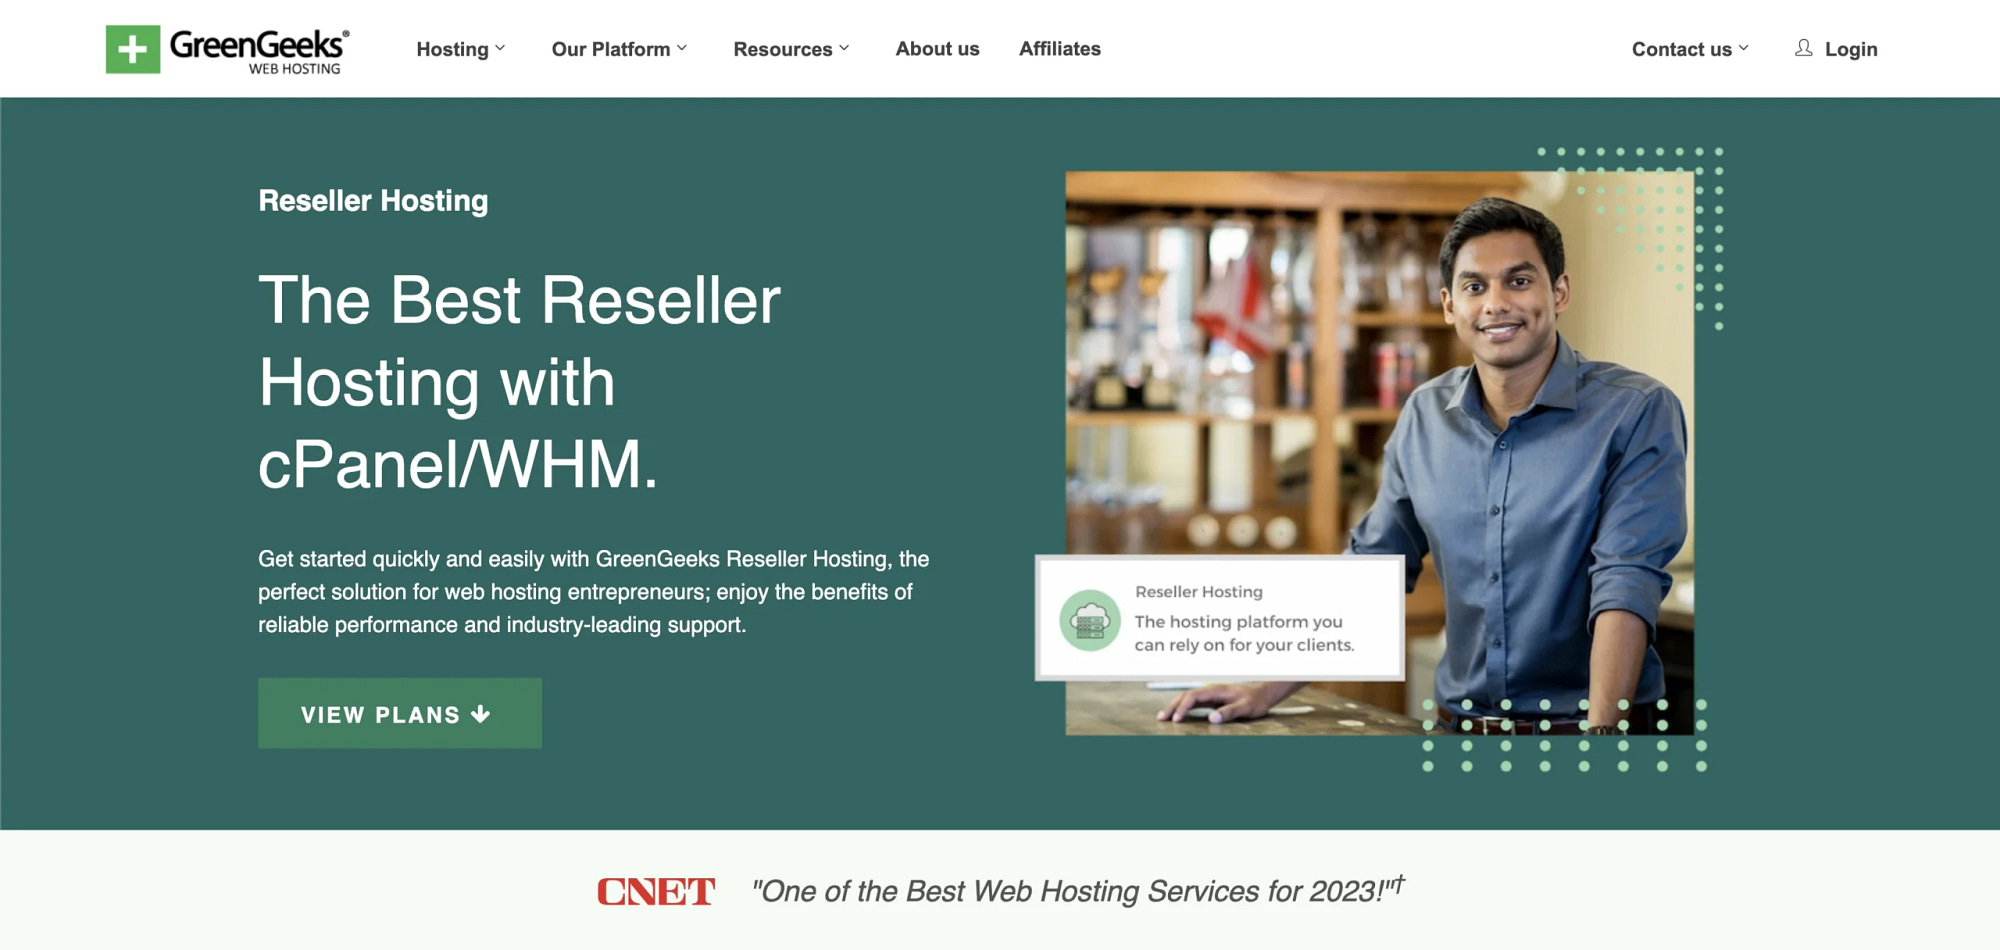 Green Geeks' reseller hosting page